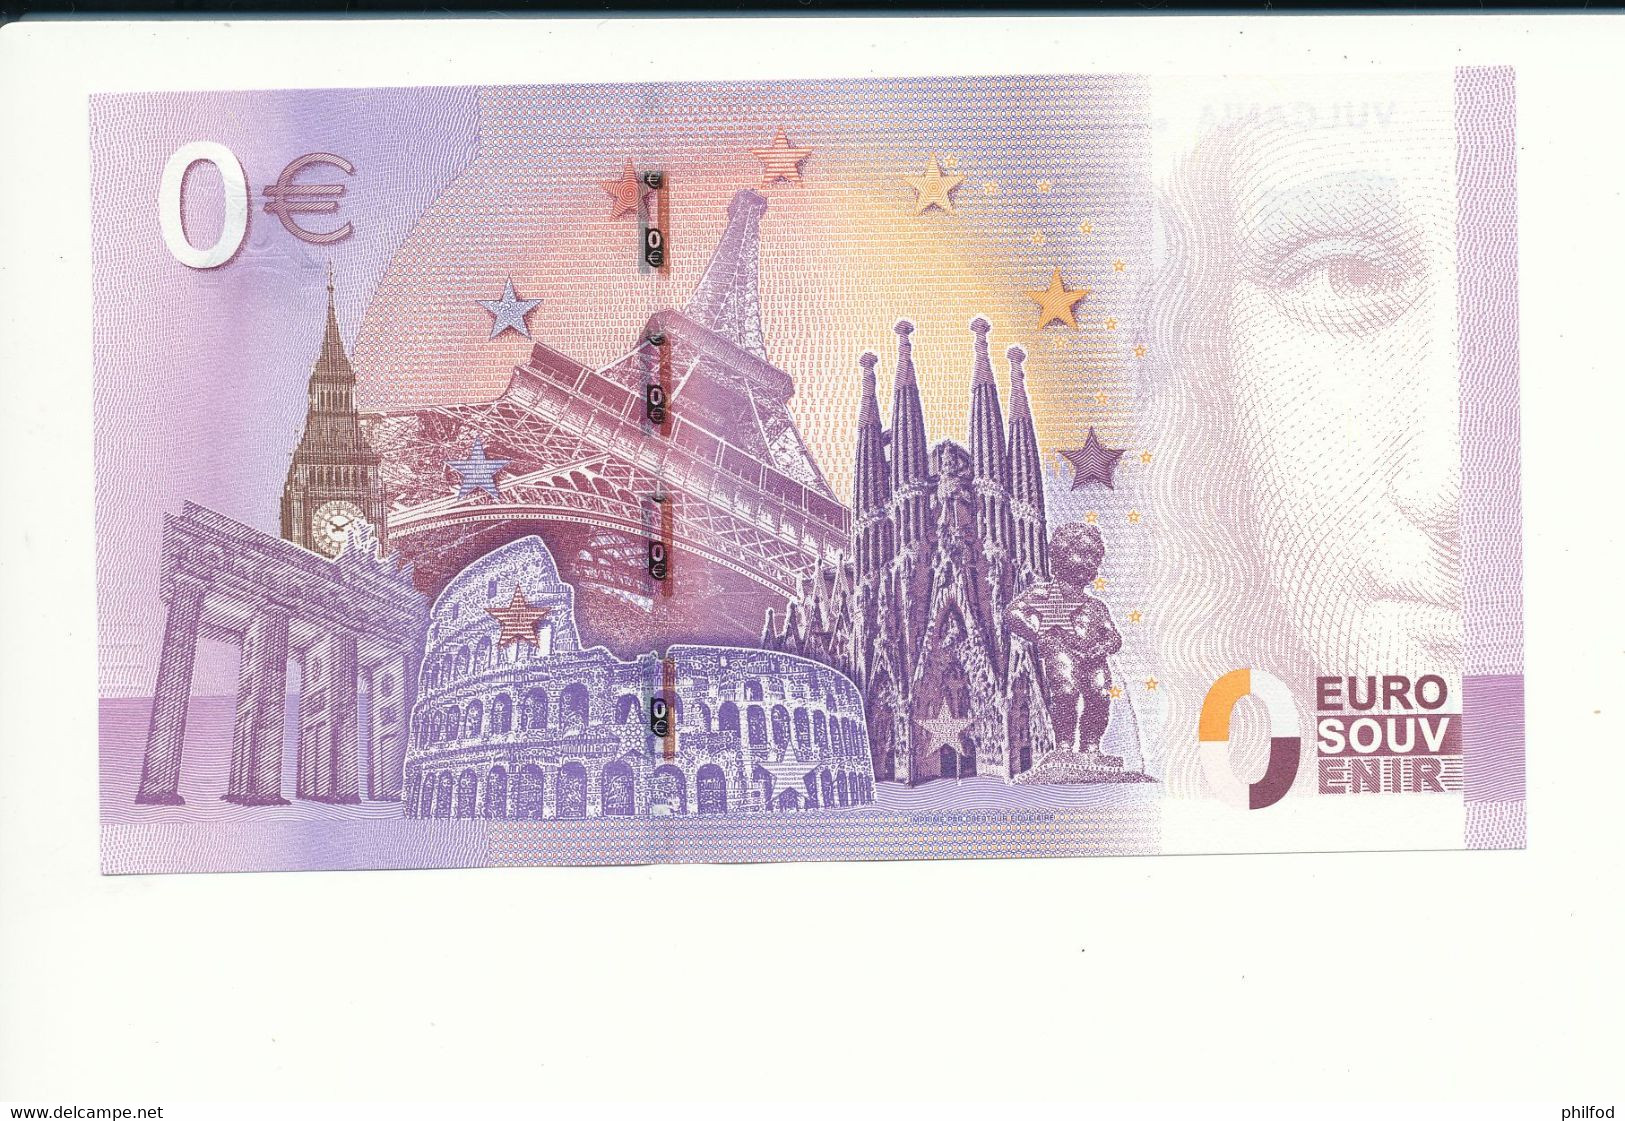 Billet Souvenir - 0 Euro - UEAF - 2017-3 - VULCANIA SUR LES TRACES DES DINOSAURES -  N° 1027 - Billet épuisé - Mezclas - Billetes